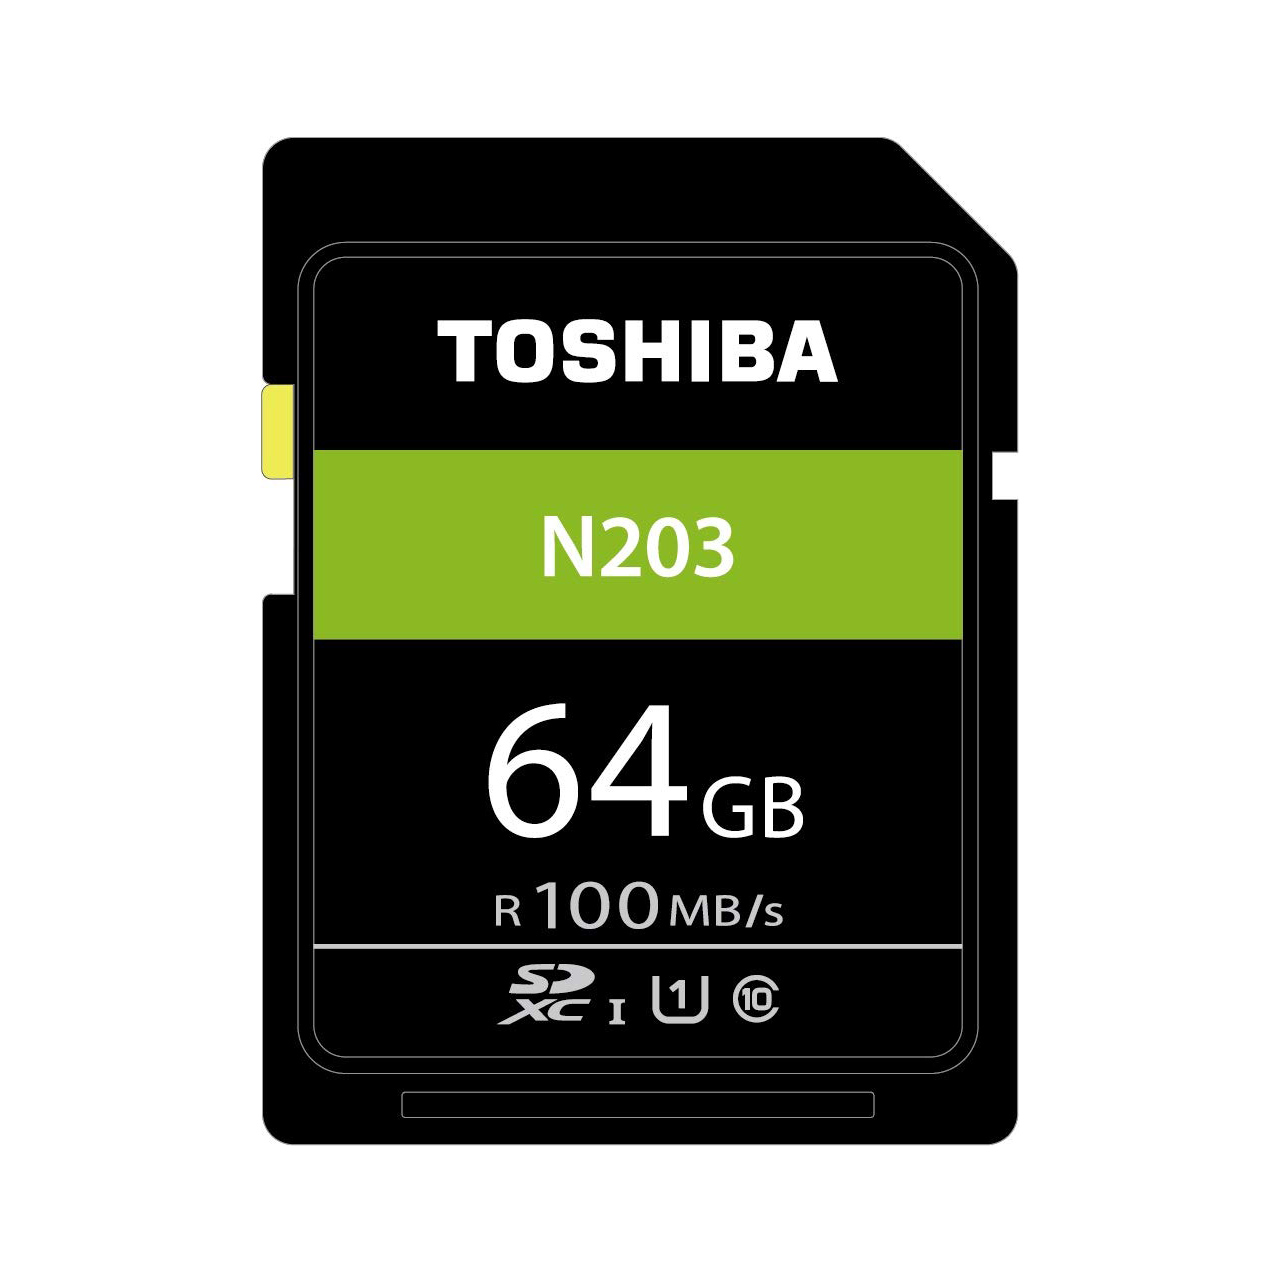 کارت حافظه SDXC توشیبا مدل N203 کلاس 10 استاندارد UHS-I 1 سرعت 100Mbps ظرفیت 64 گیگابایت